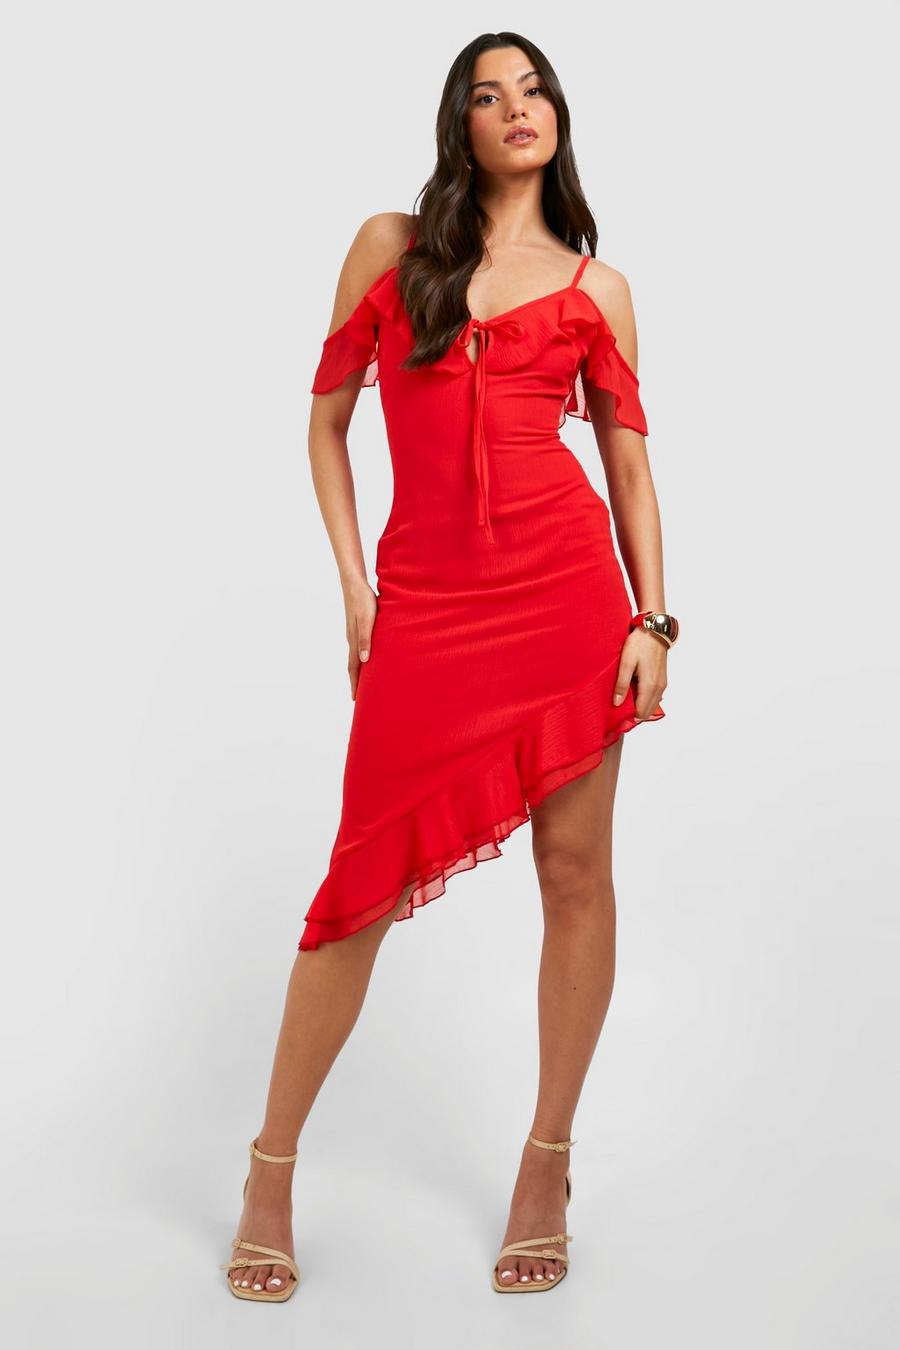 Red Chiffon Assymteric Ruffle Strappy Mini Dress